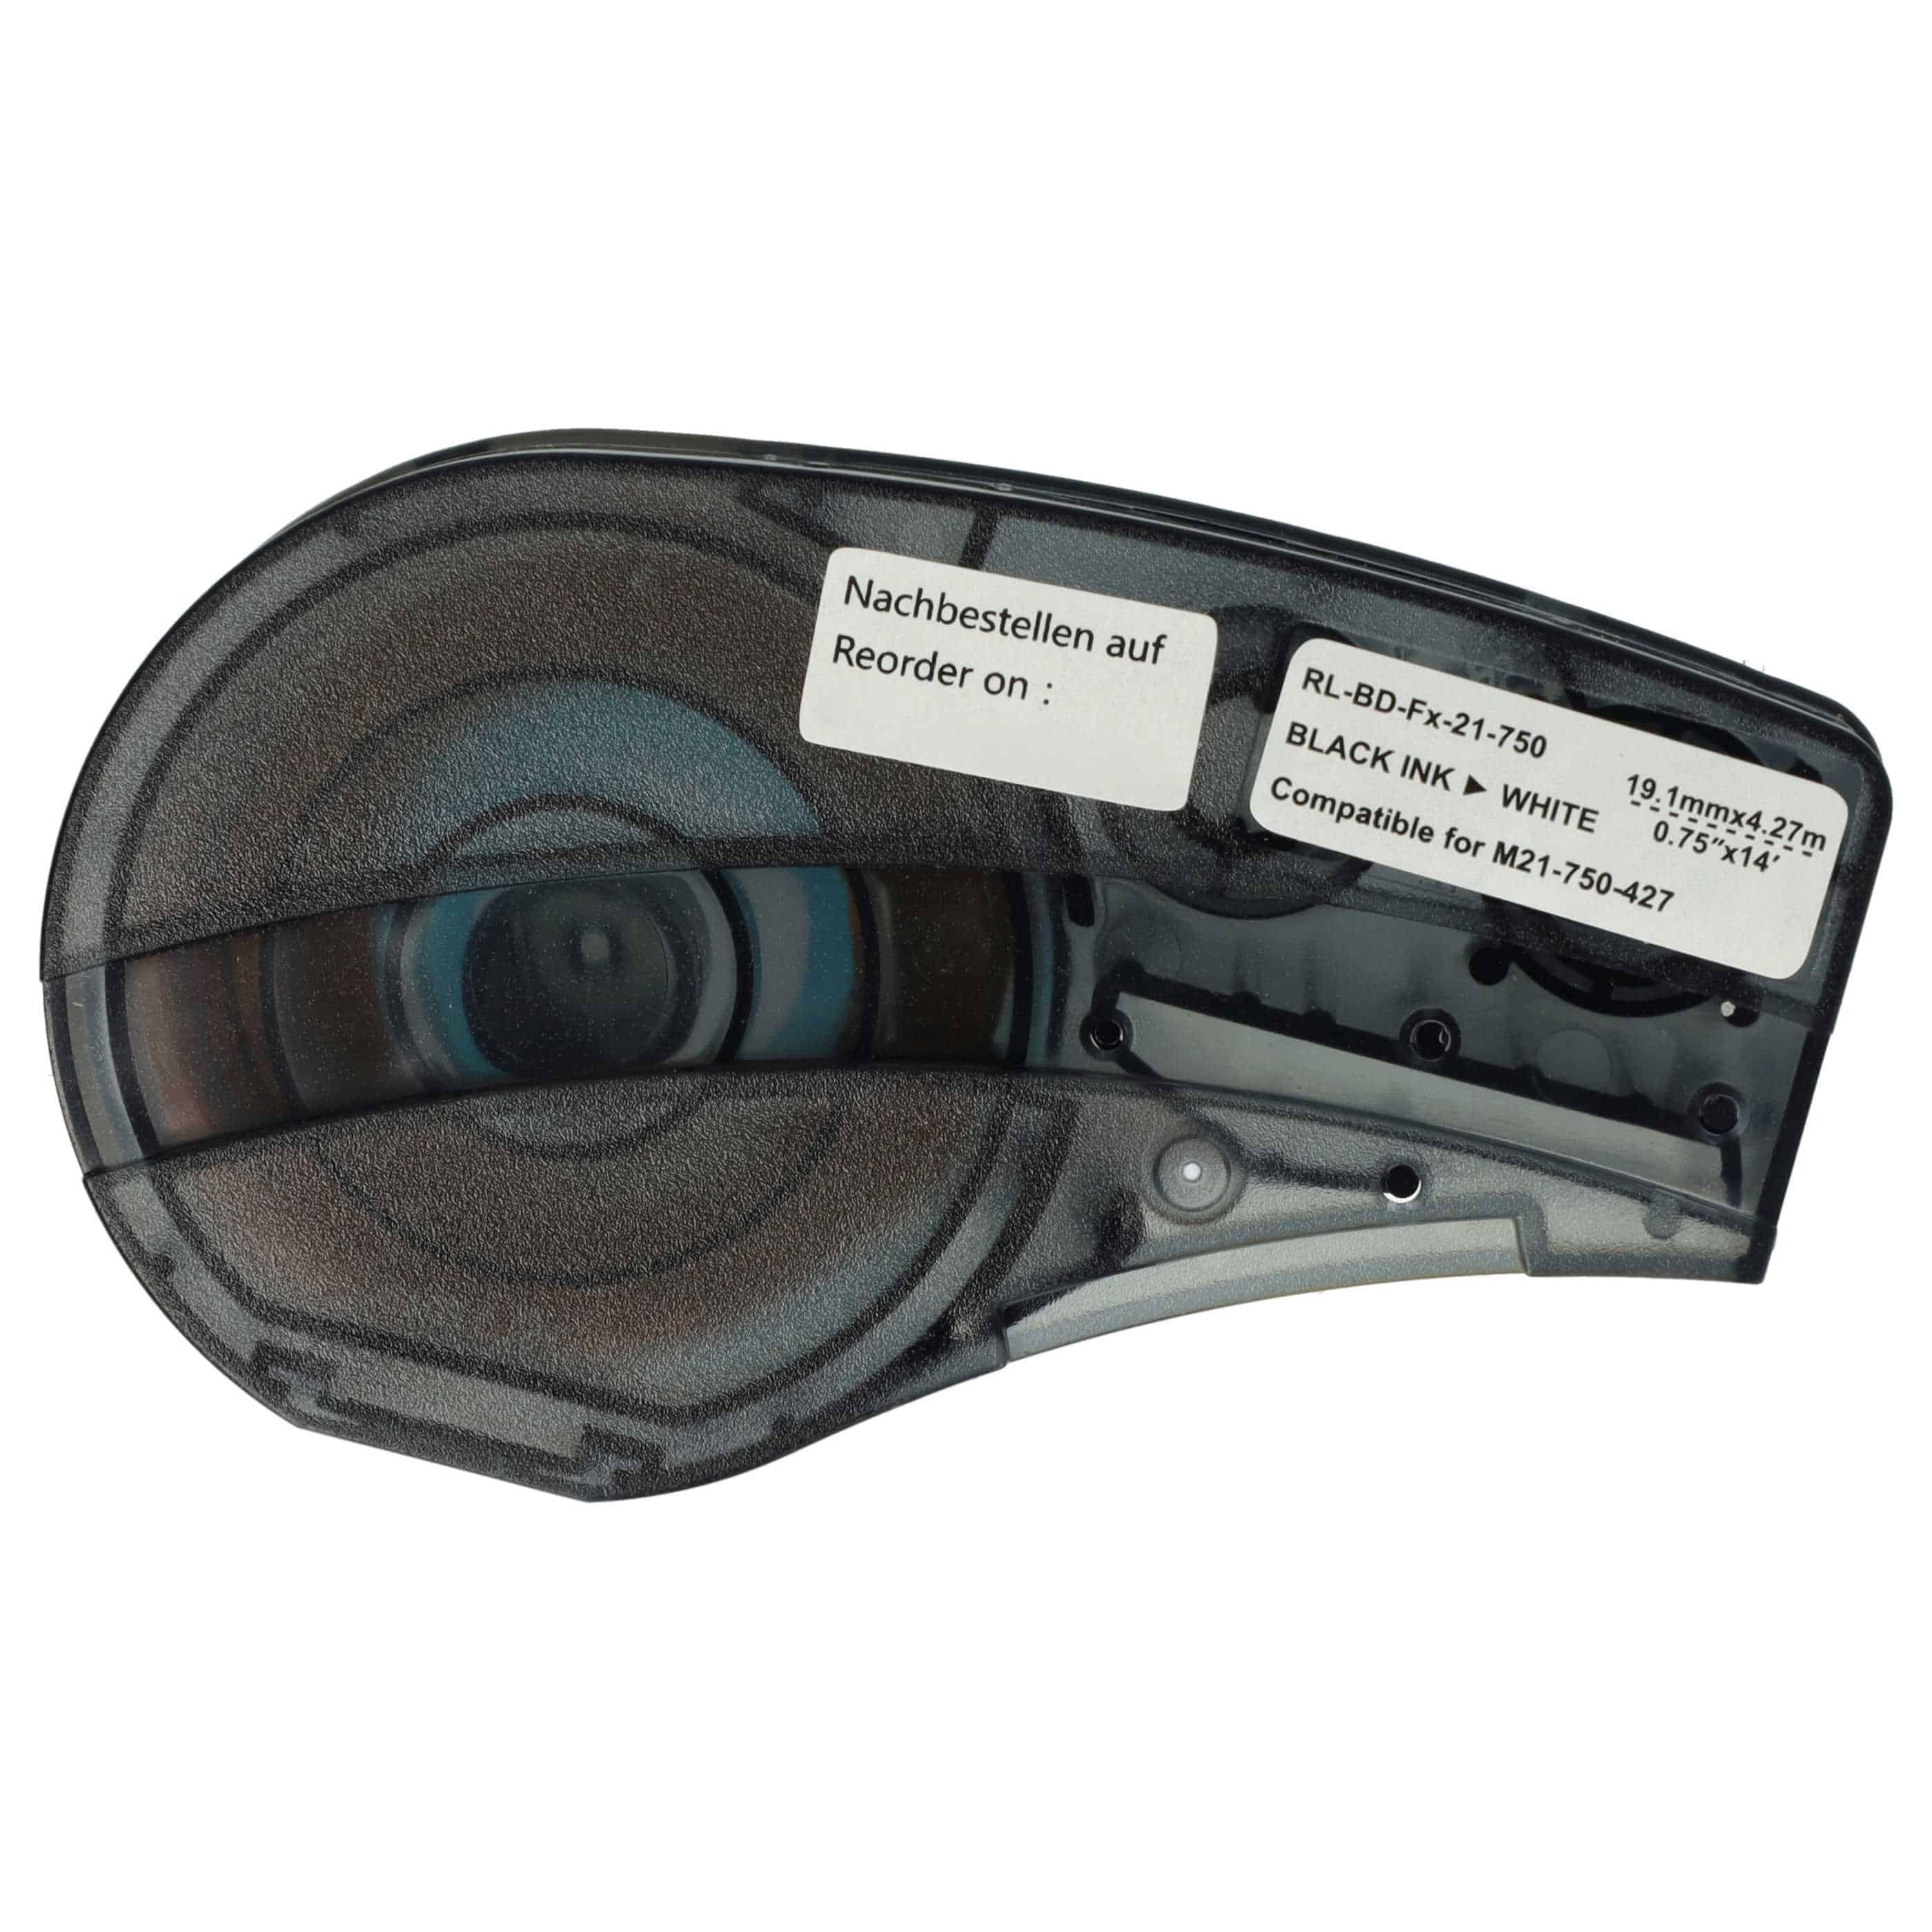 Cassetta nastro sostituisce Brady M21-750-427 per etichettatrice Brady 19,05mm nero su bianco, vinile